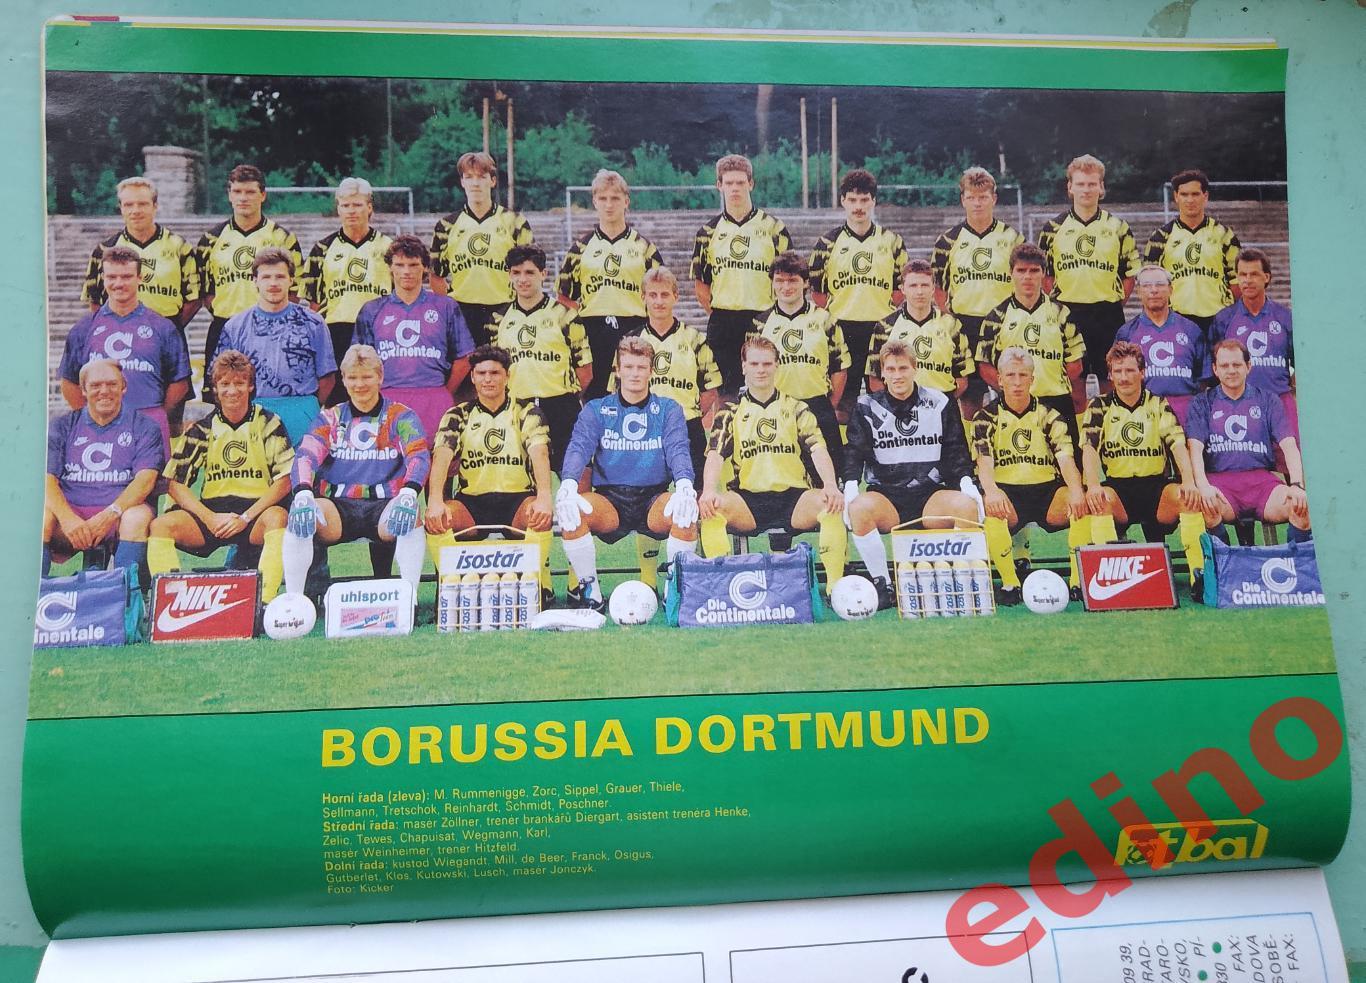 журнал Fotbal Чехия 1993/6 Боруссия Дортмунд 1